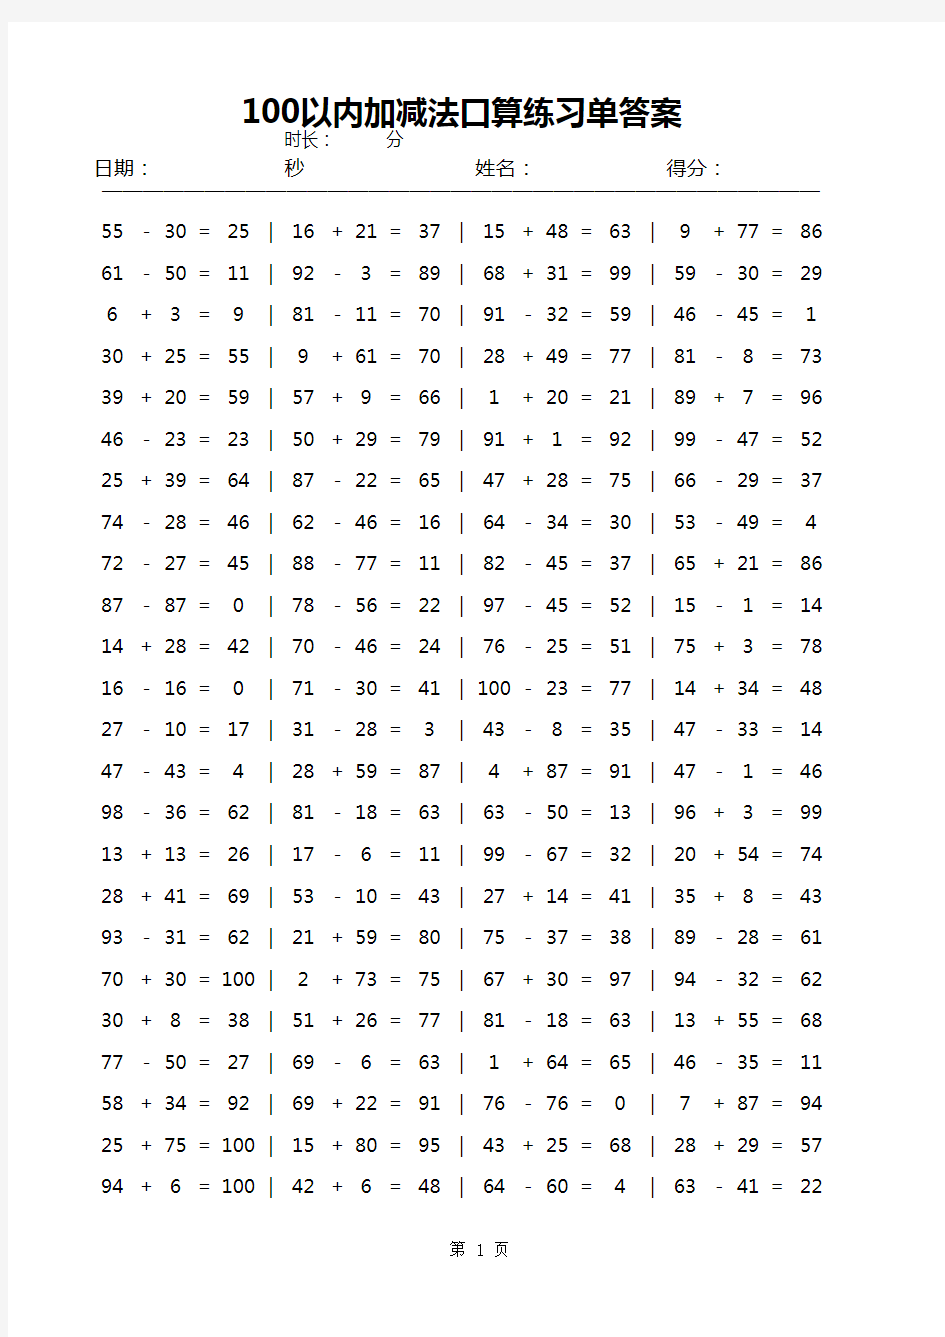 100以内加减法口算练习单自动生成器无限生成题目(含答案)A4排版每页100题直接打印